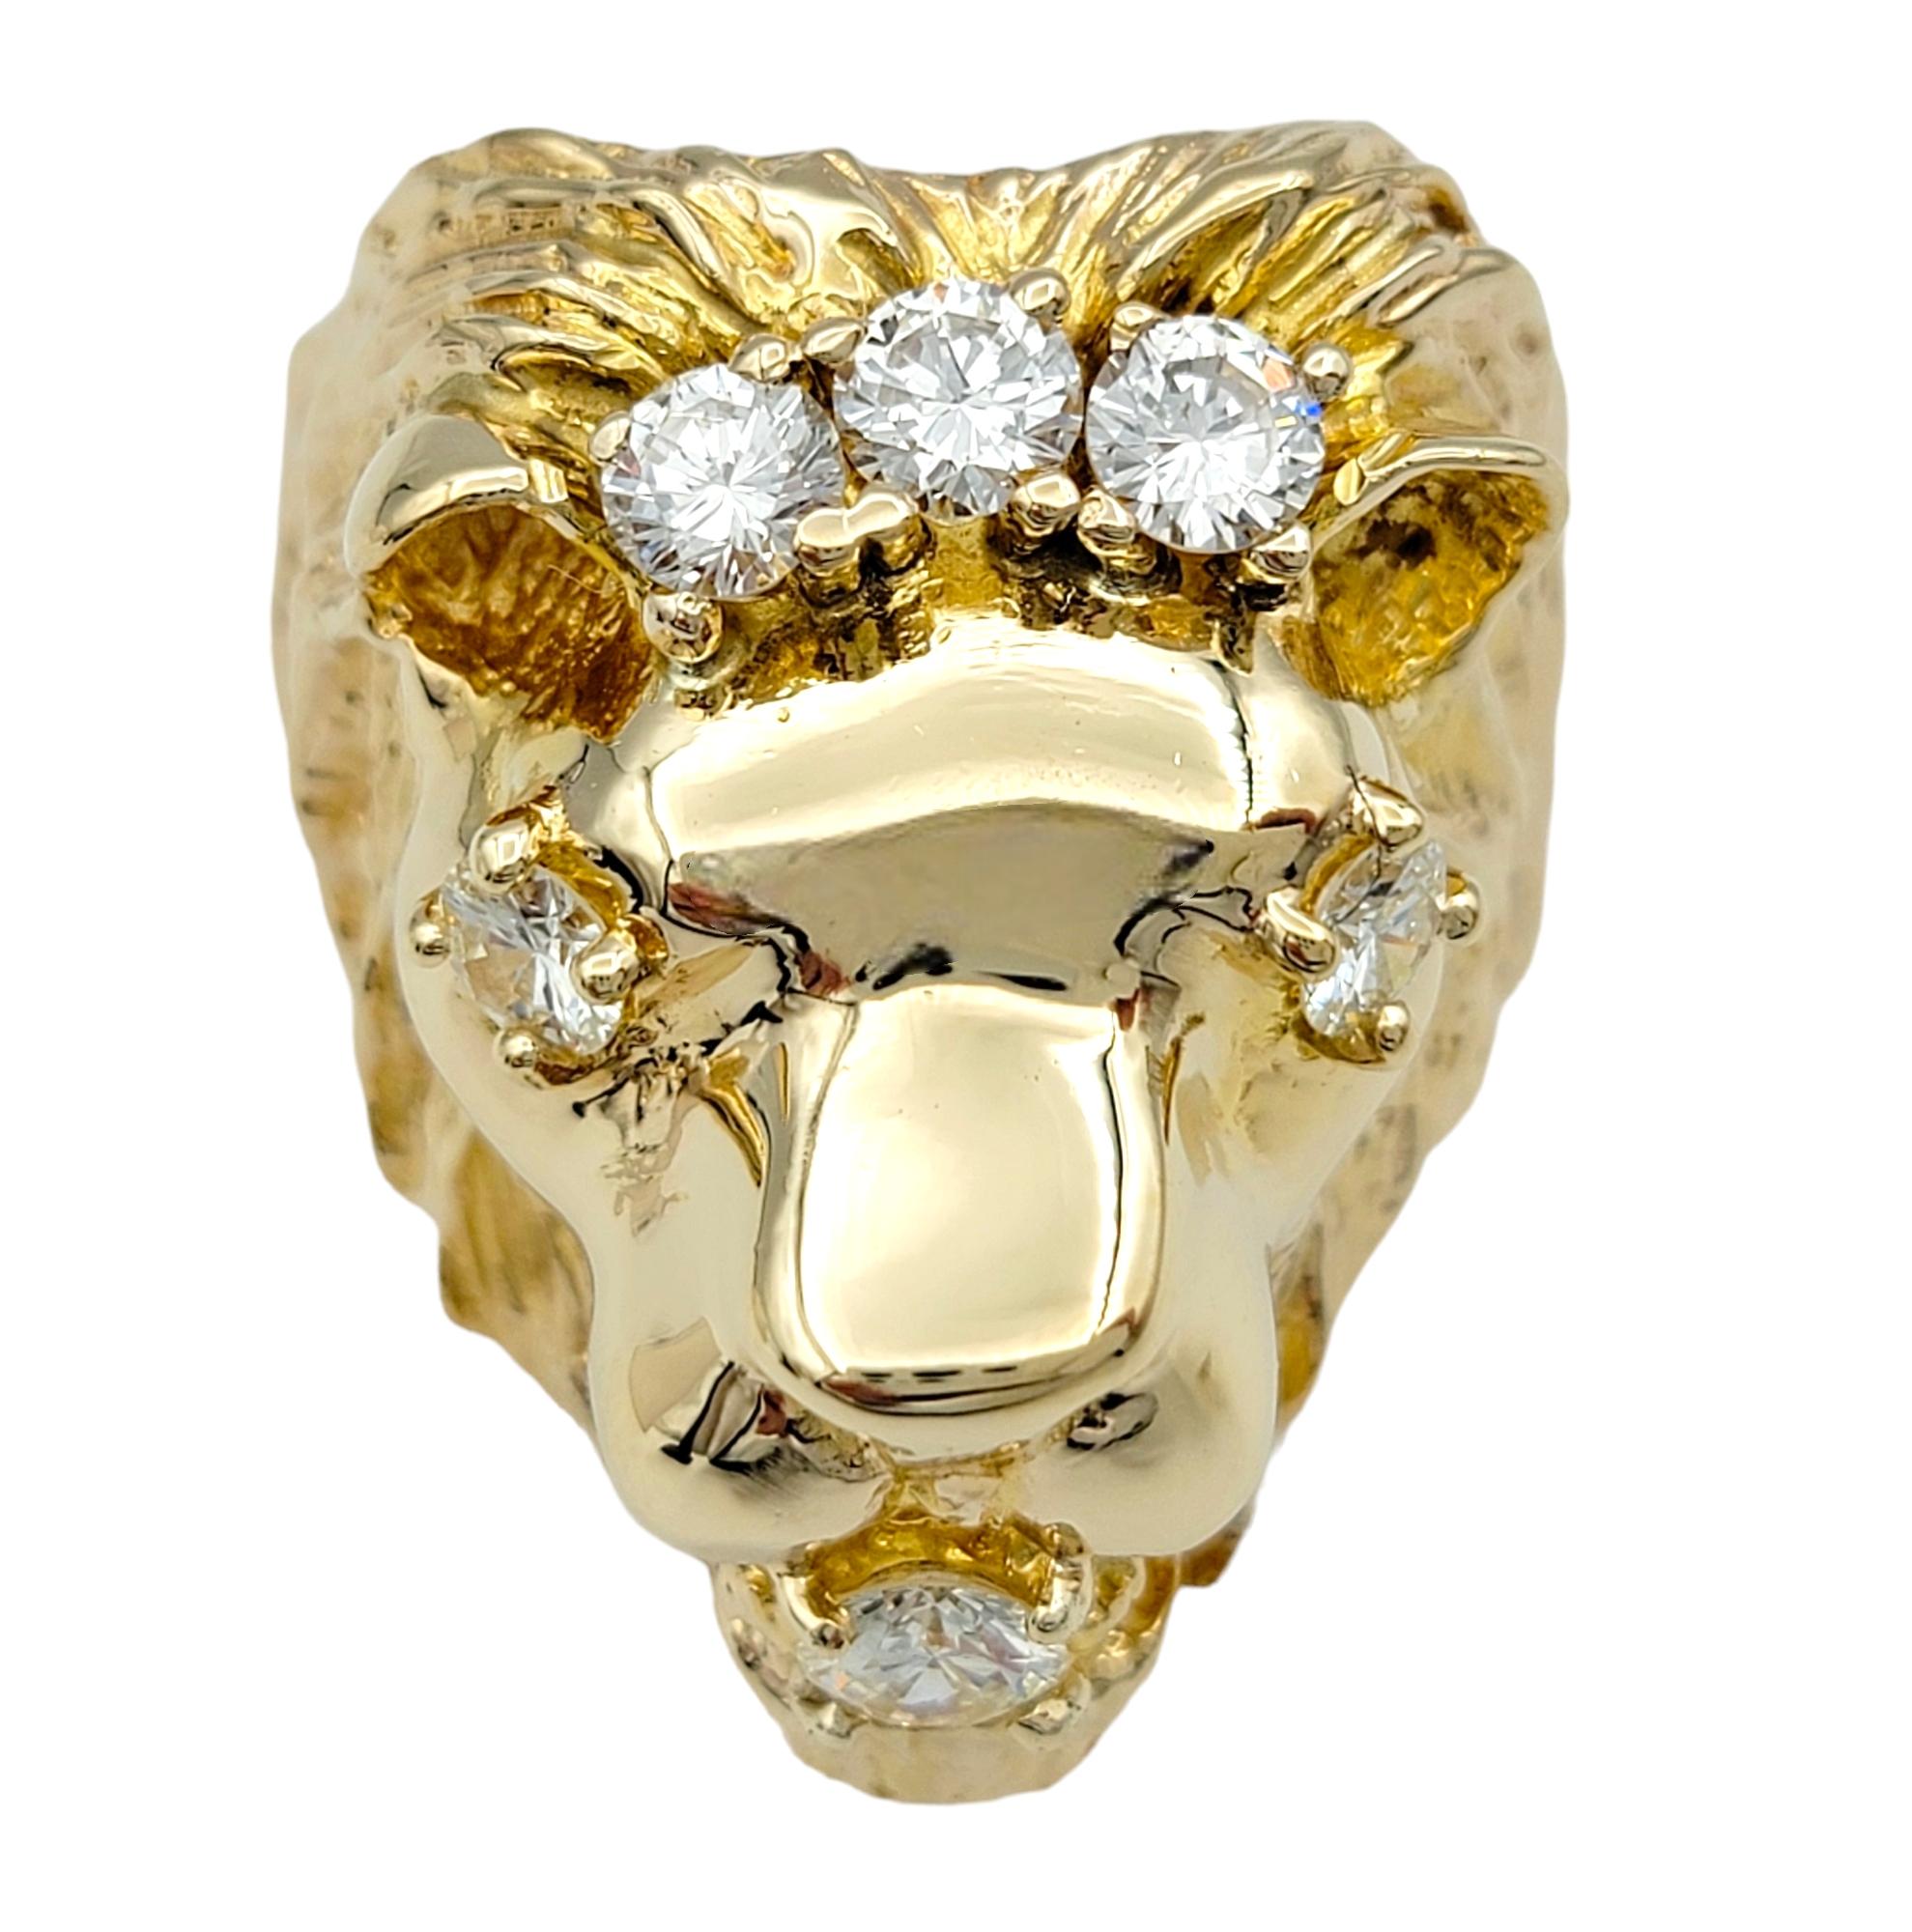 Ringgröße: 9.75

Dieser auffällige Löwenkopfring zieht mit seinem wilden und zugleich eleganten Design alle Blicke auf sich. Der aus glänzendem 14-karätigem Gelbgold gefertigte Ring besticht durch seine exquisiten Details, die den Löwenkopf